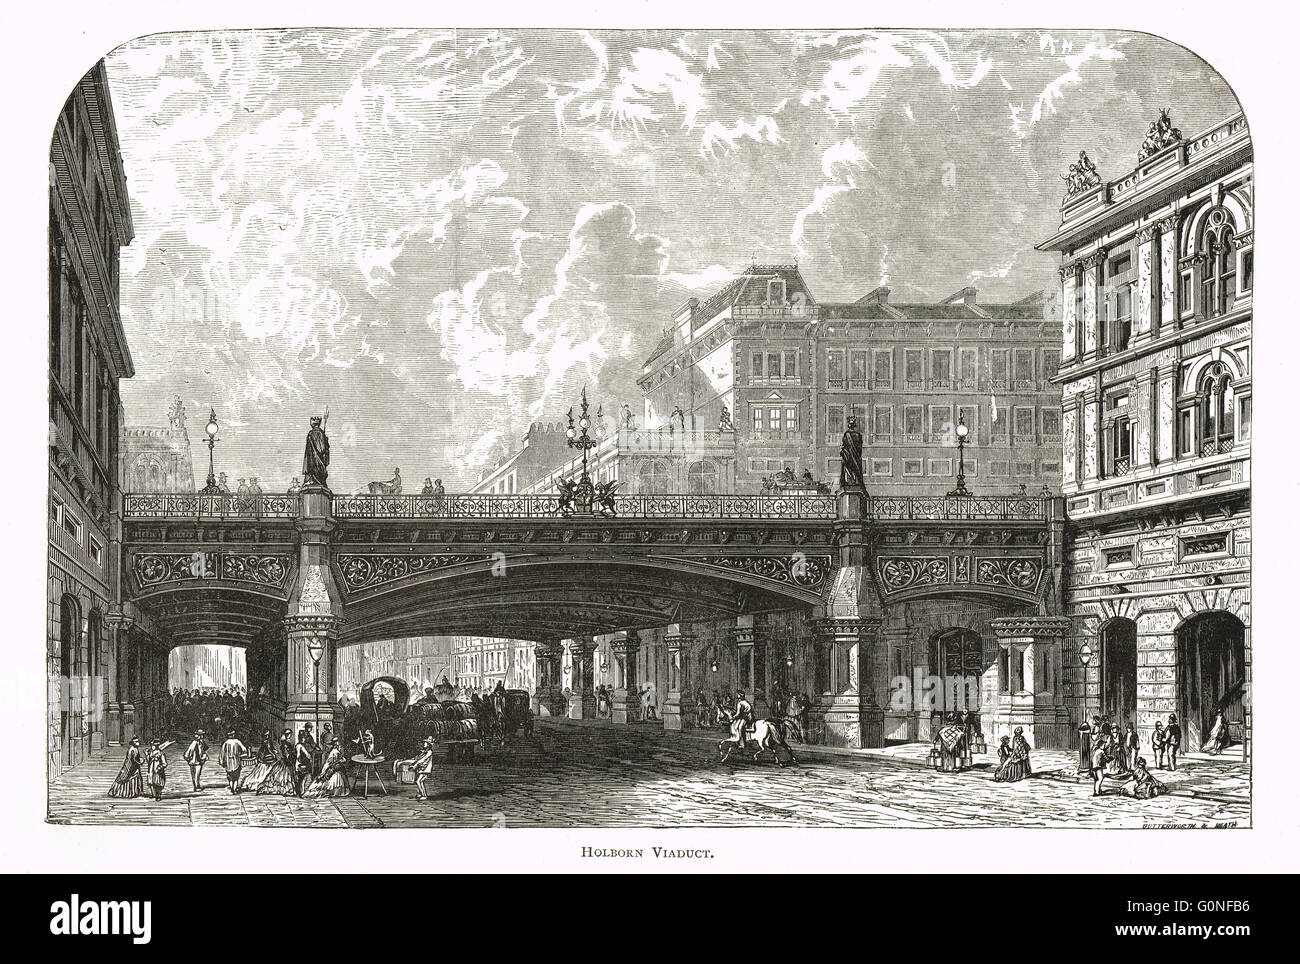 Holborn Viaduct, Londres, Angleterre au xixe siècle Banque D'Images